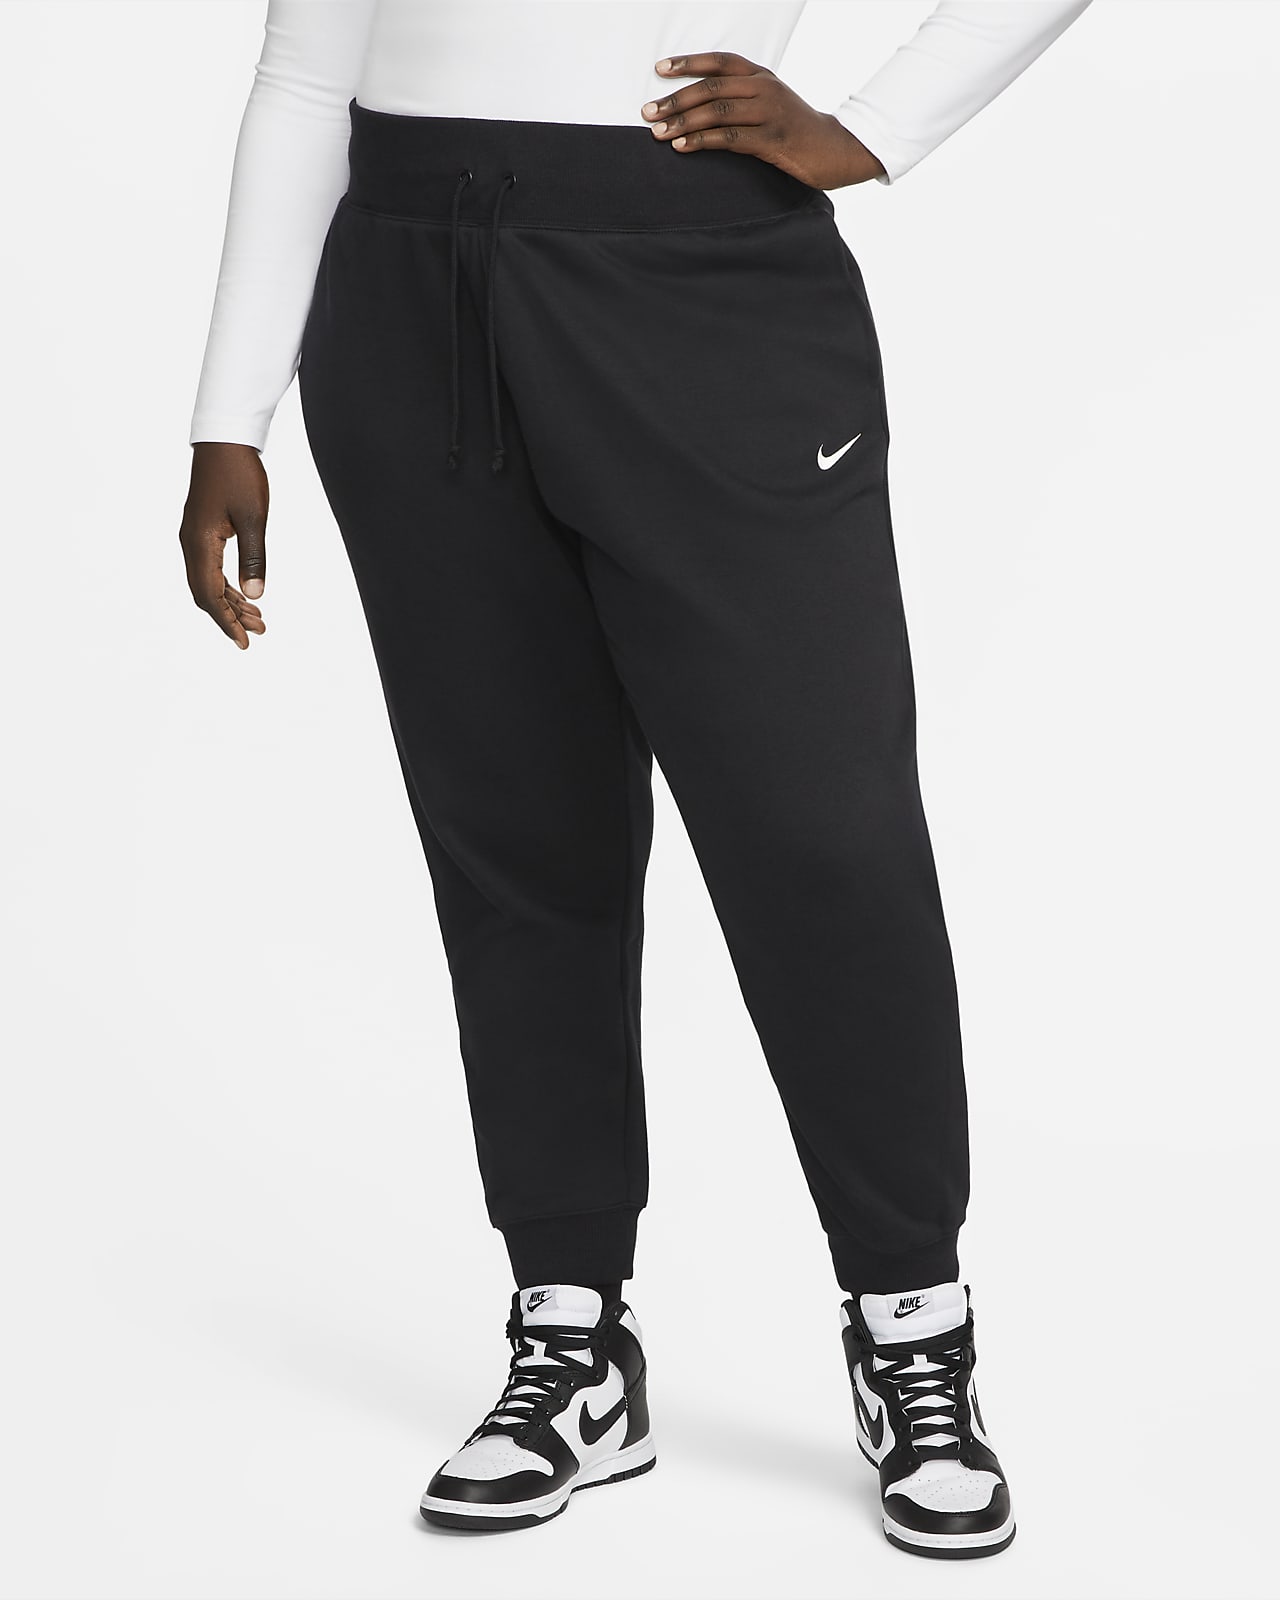 Femmes Running Pantalons et collants. Nike FR